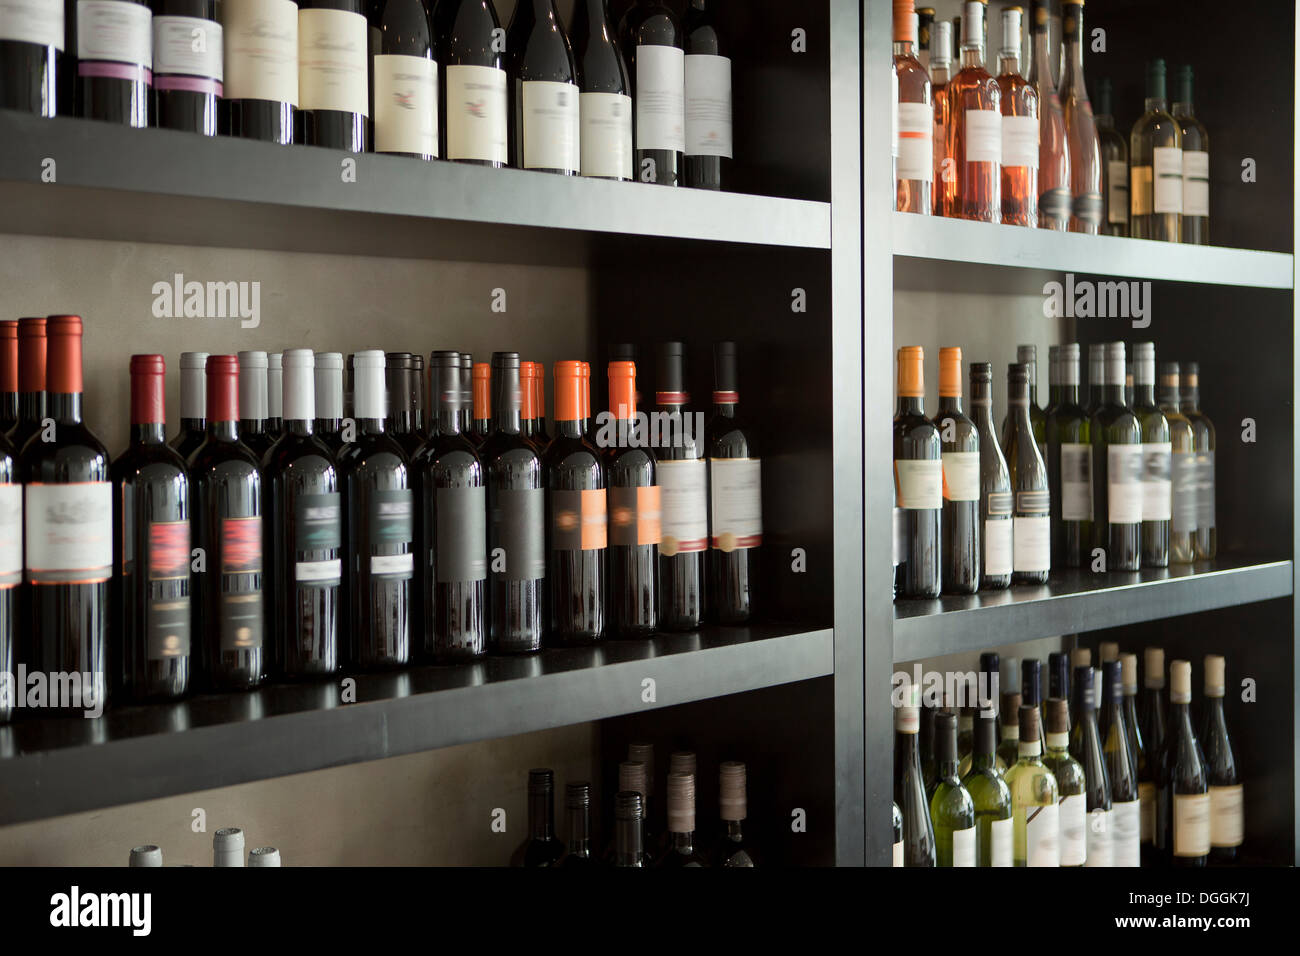 Wine bottles on shelves Stock Photo